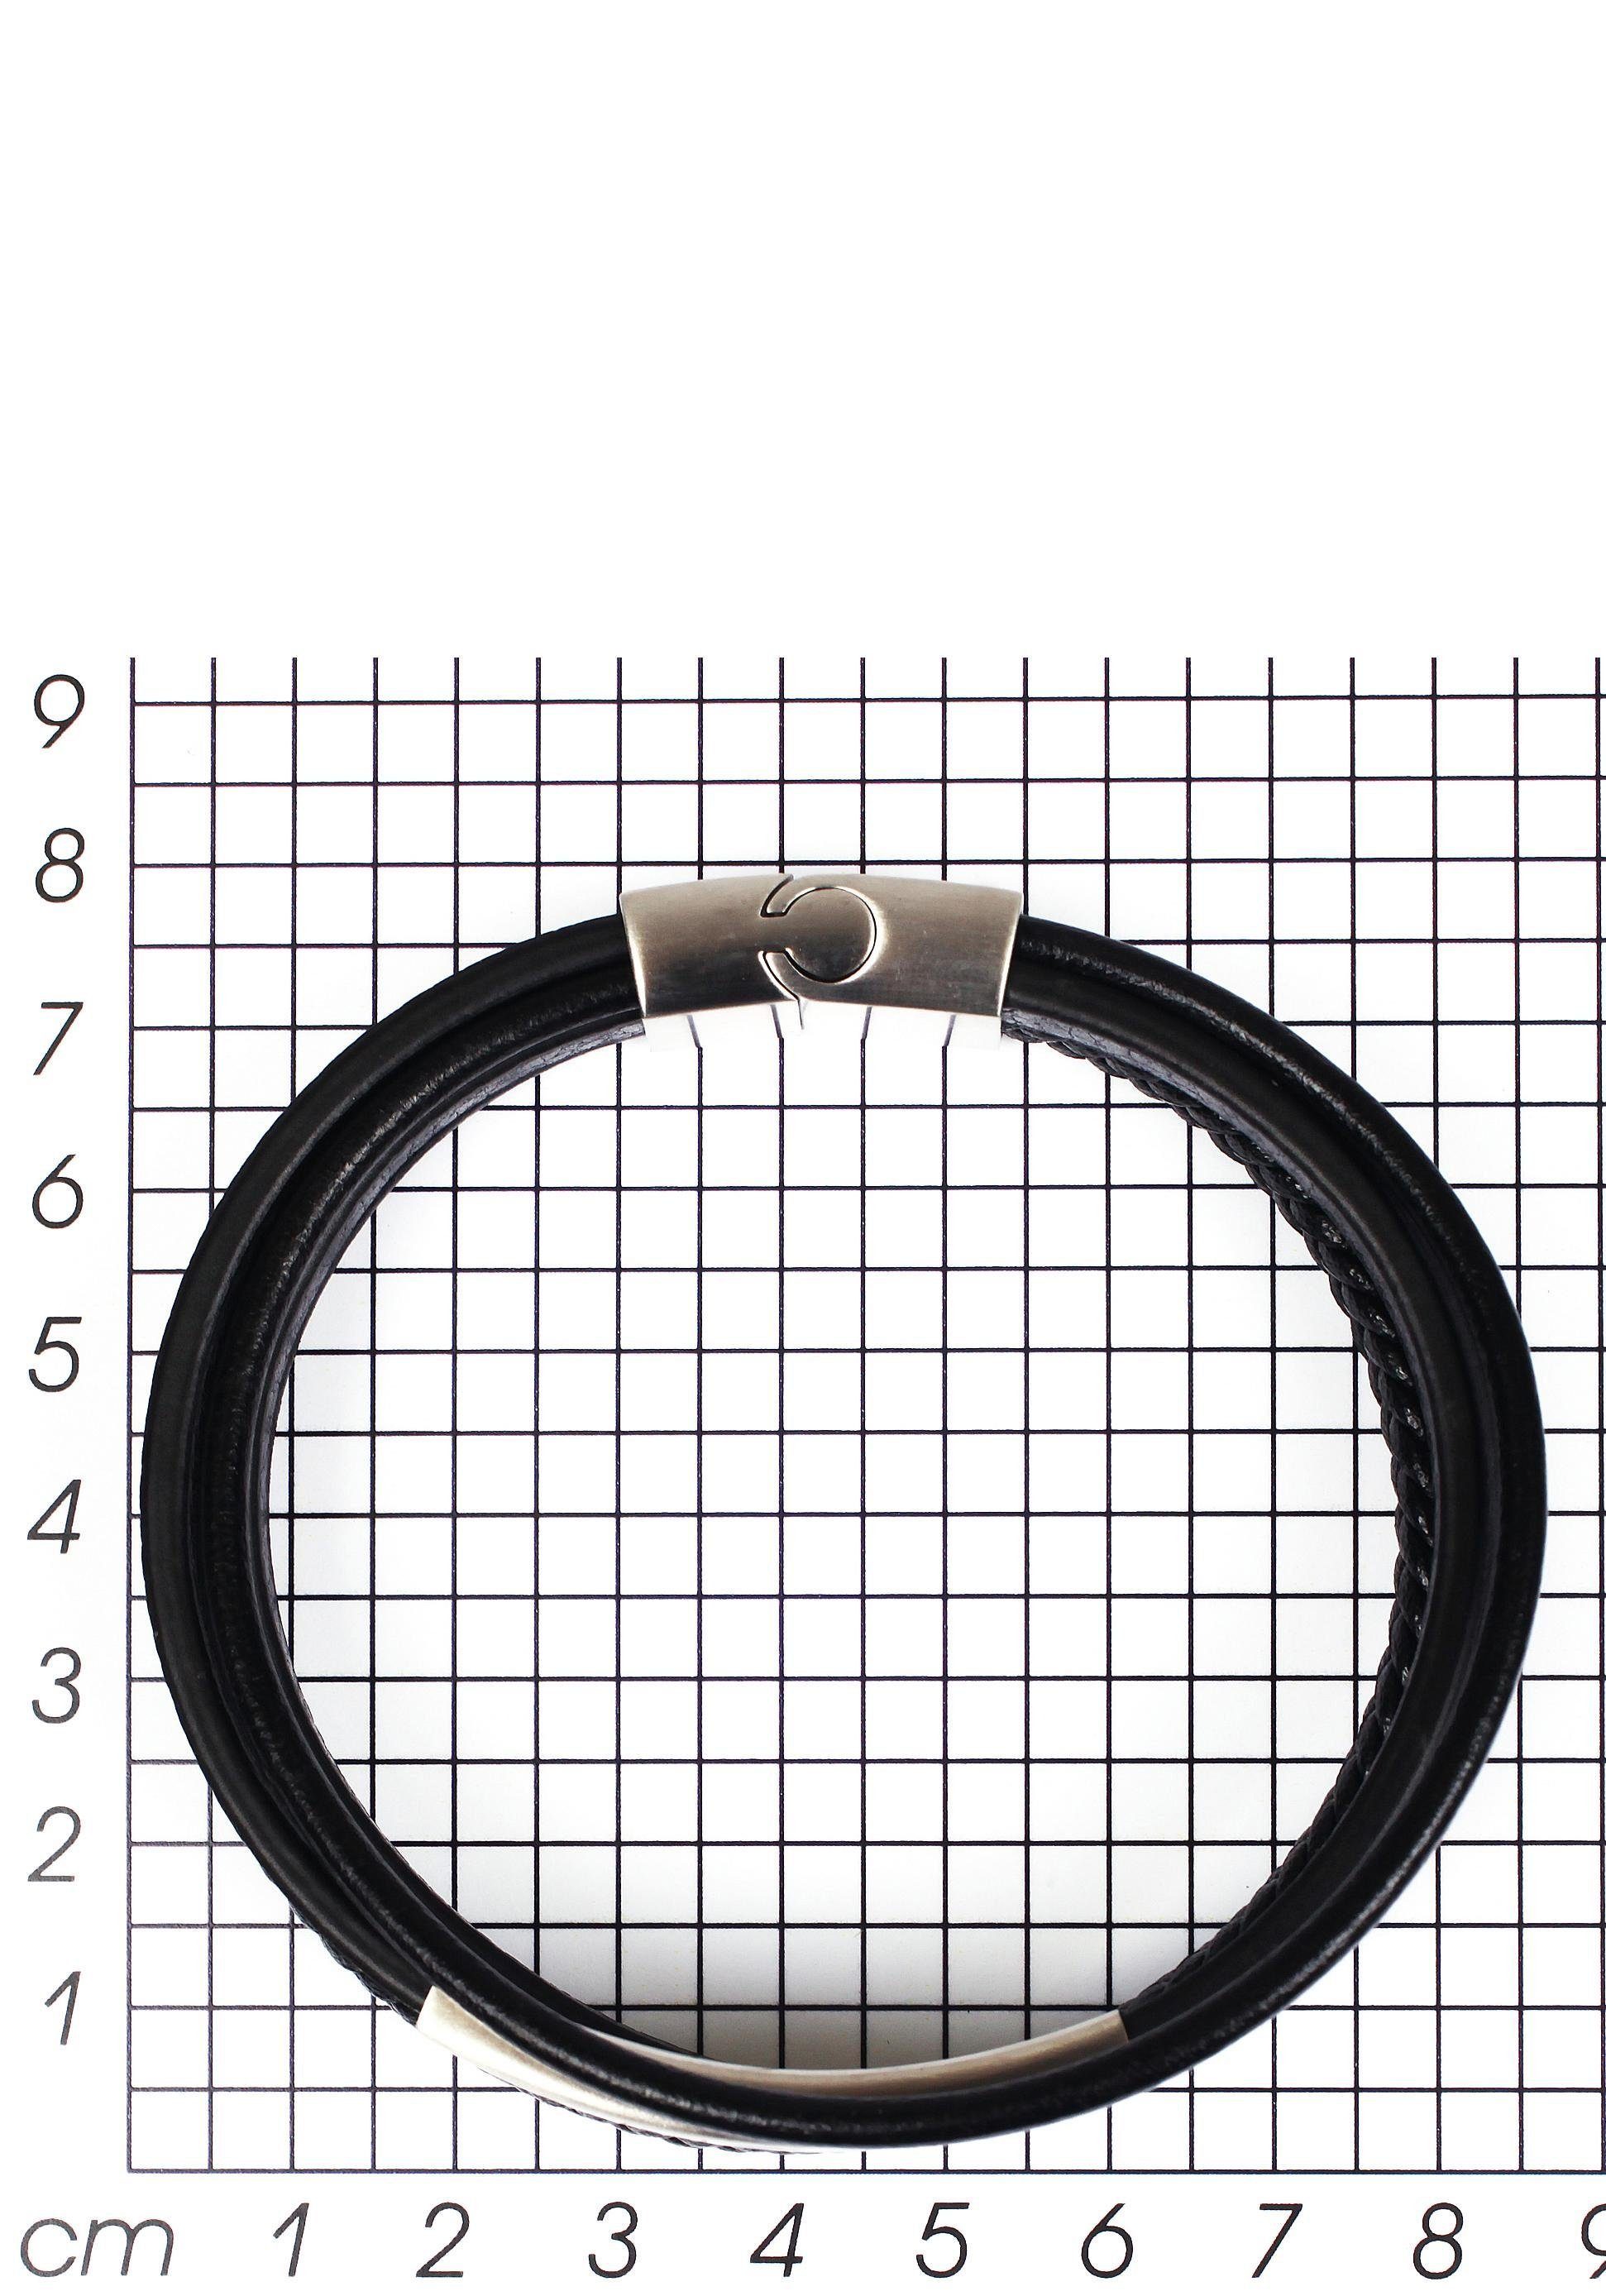 Firetti Armband stylisches Design im edelstahlfarben-schwarz mehrreihig sportlich-eleganten Stil